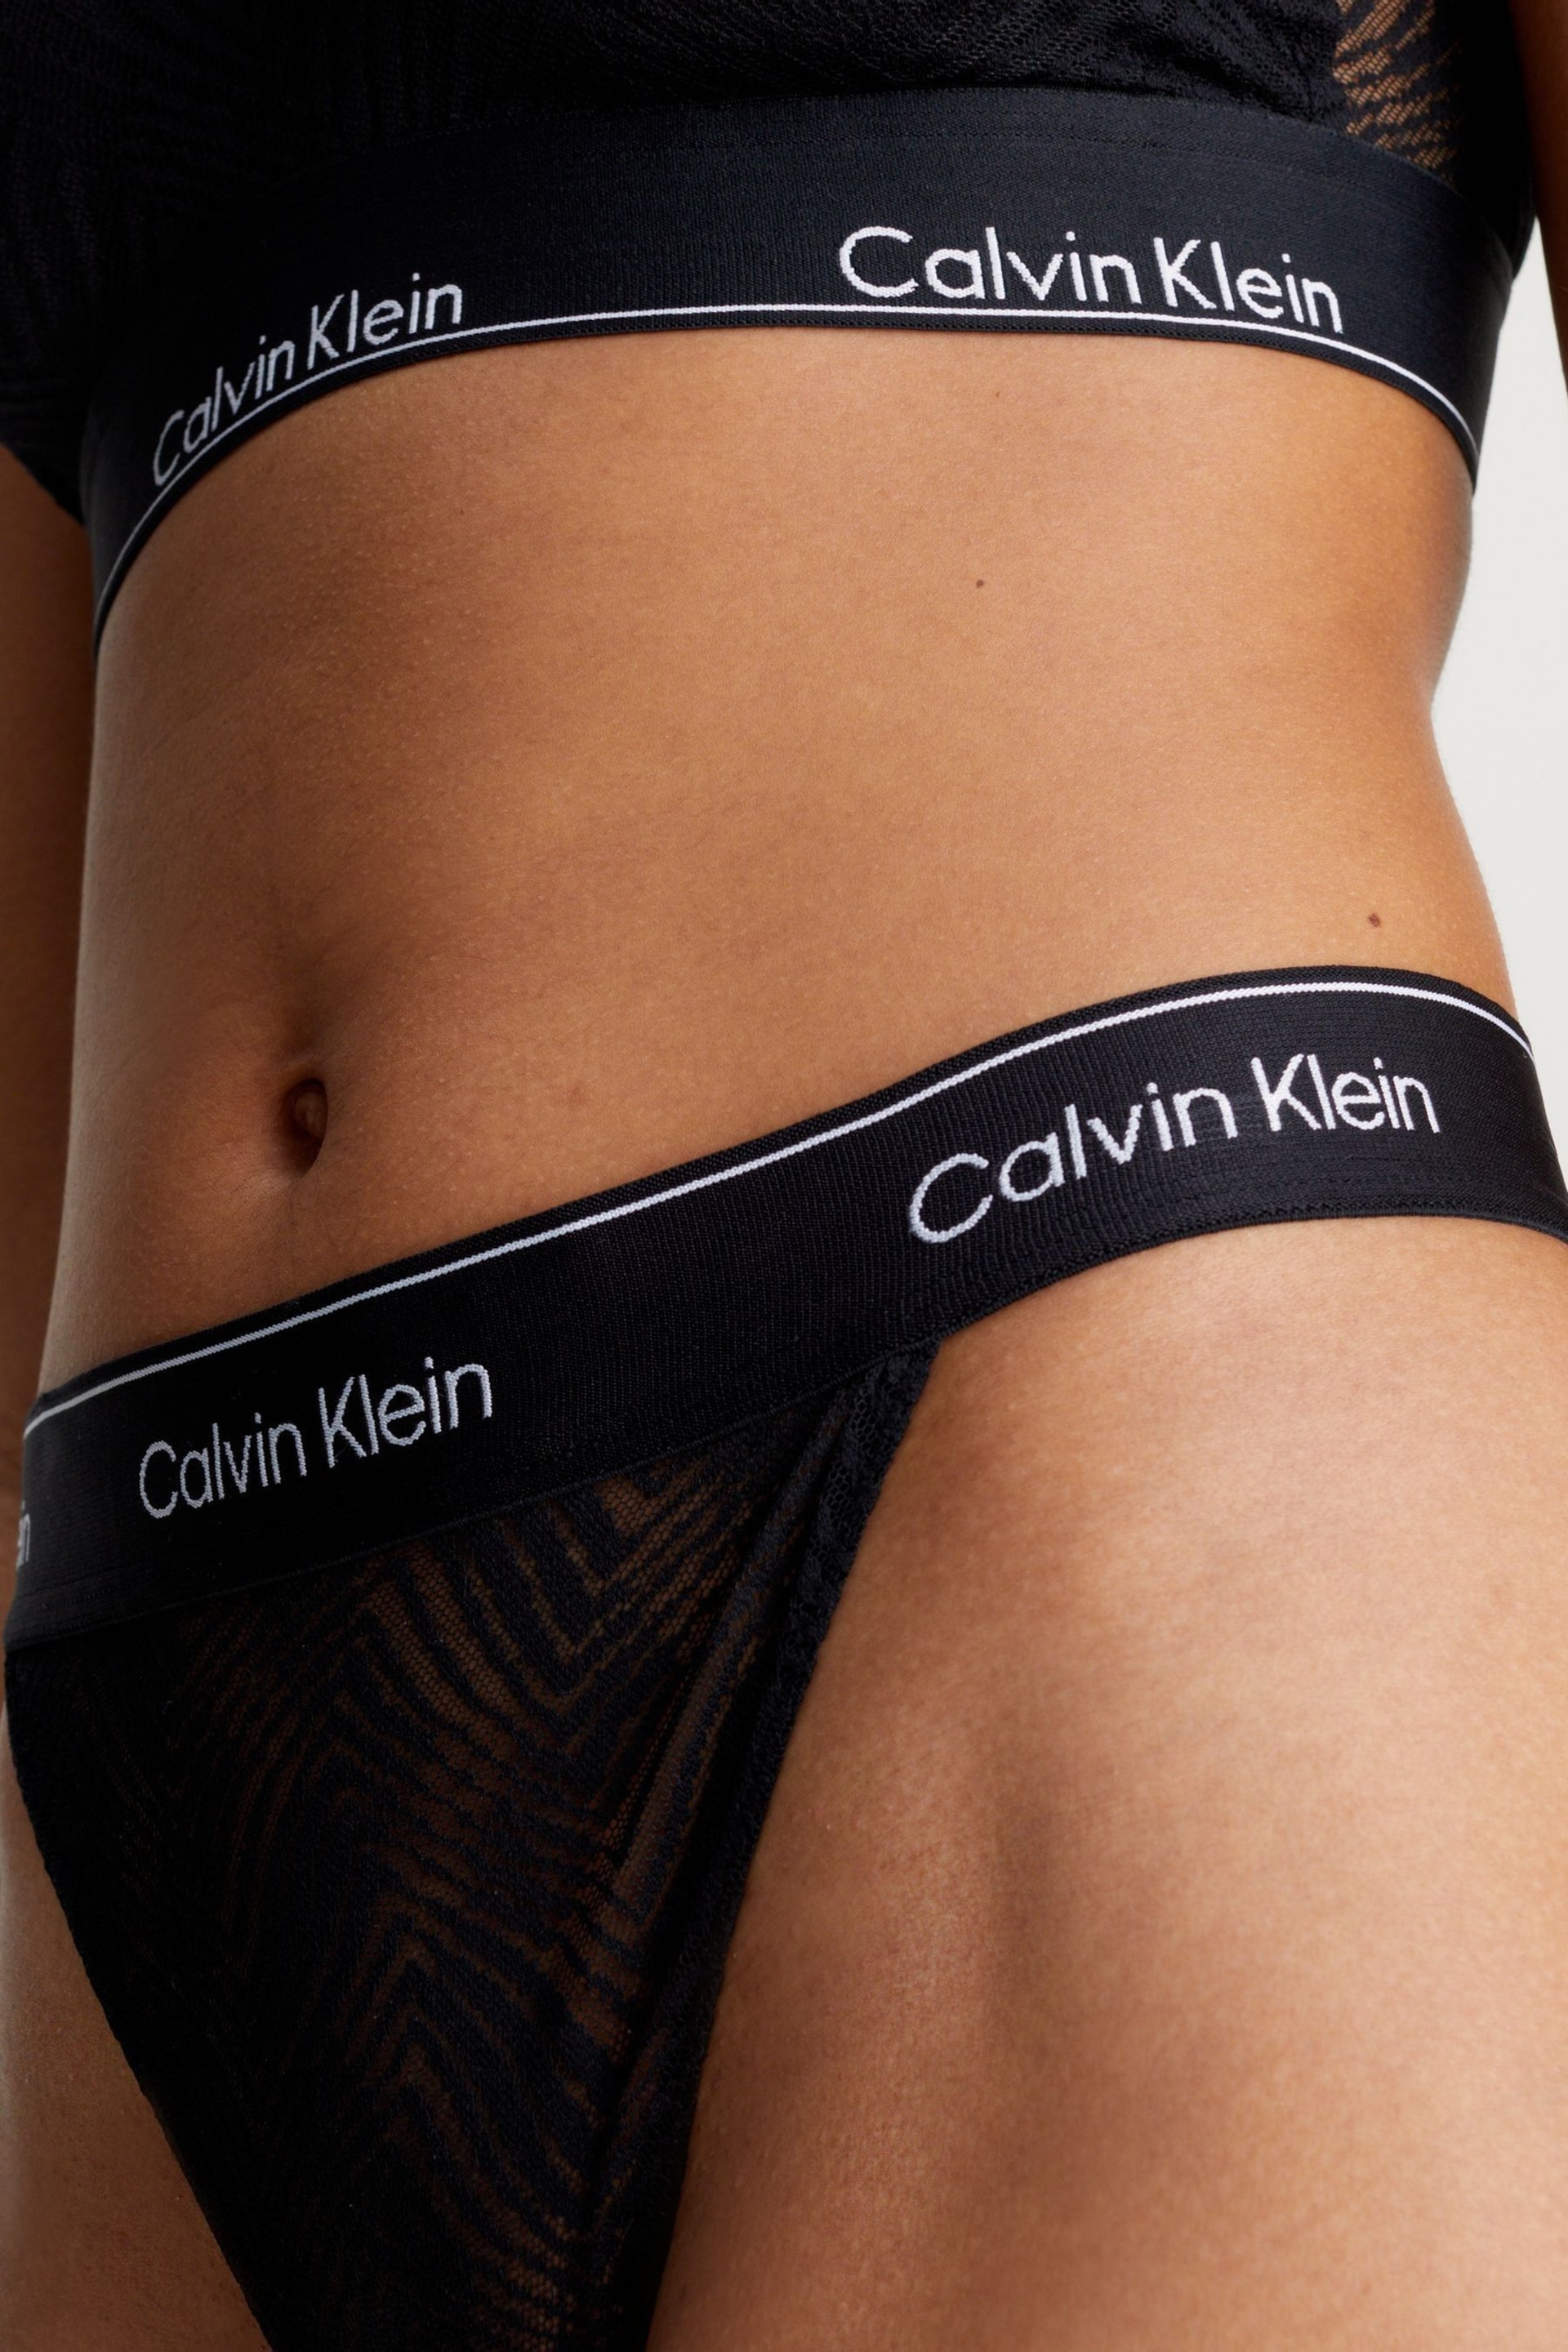 Calvin Klein Black String Thongs - Image 5 of 6